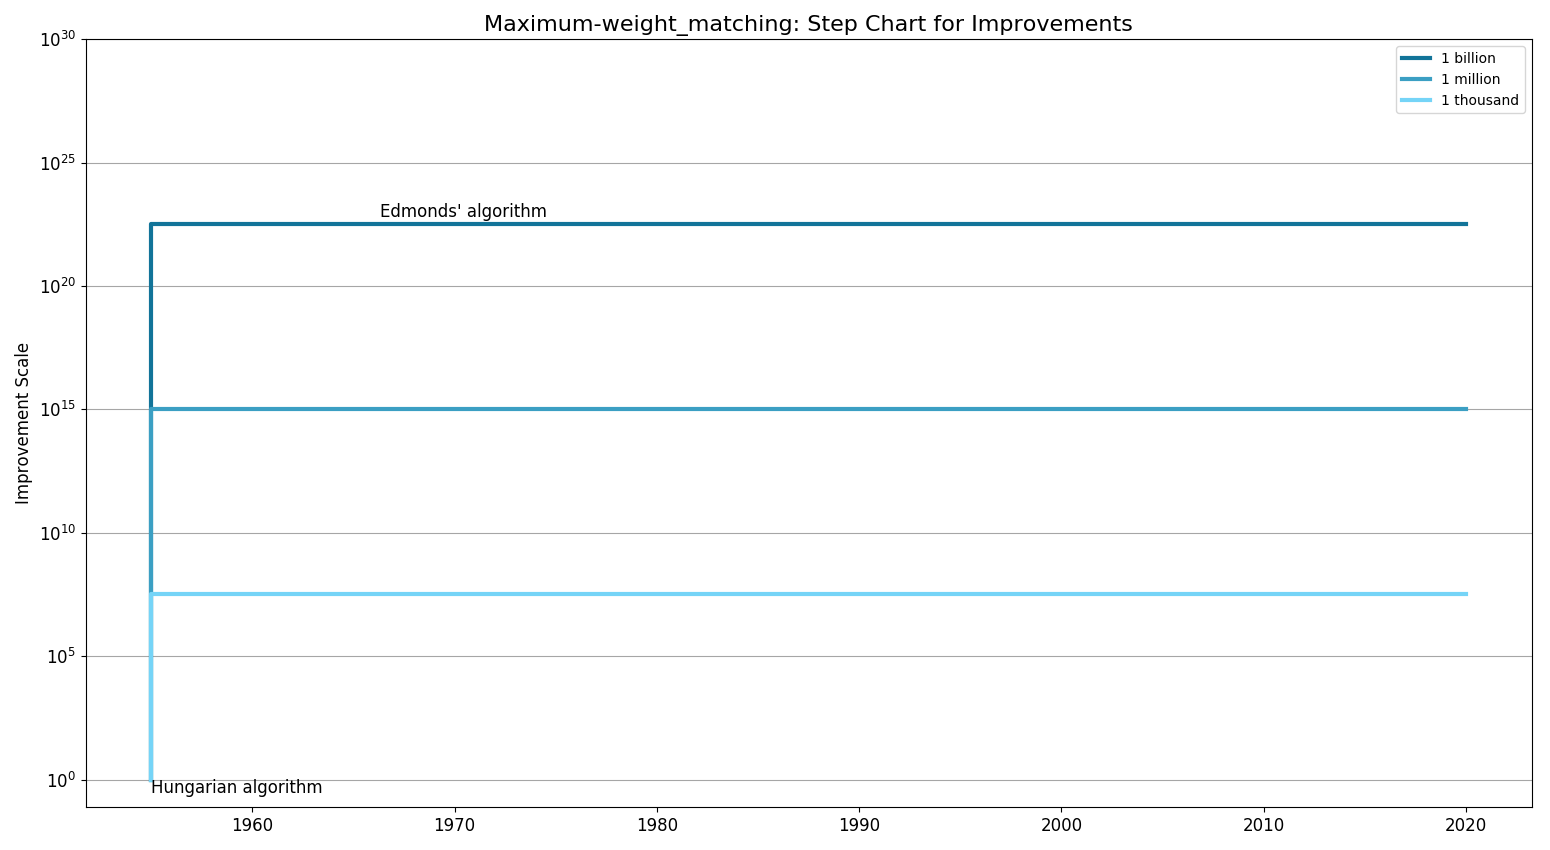 Maximum-weight matchingStepChart.png